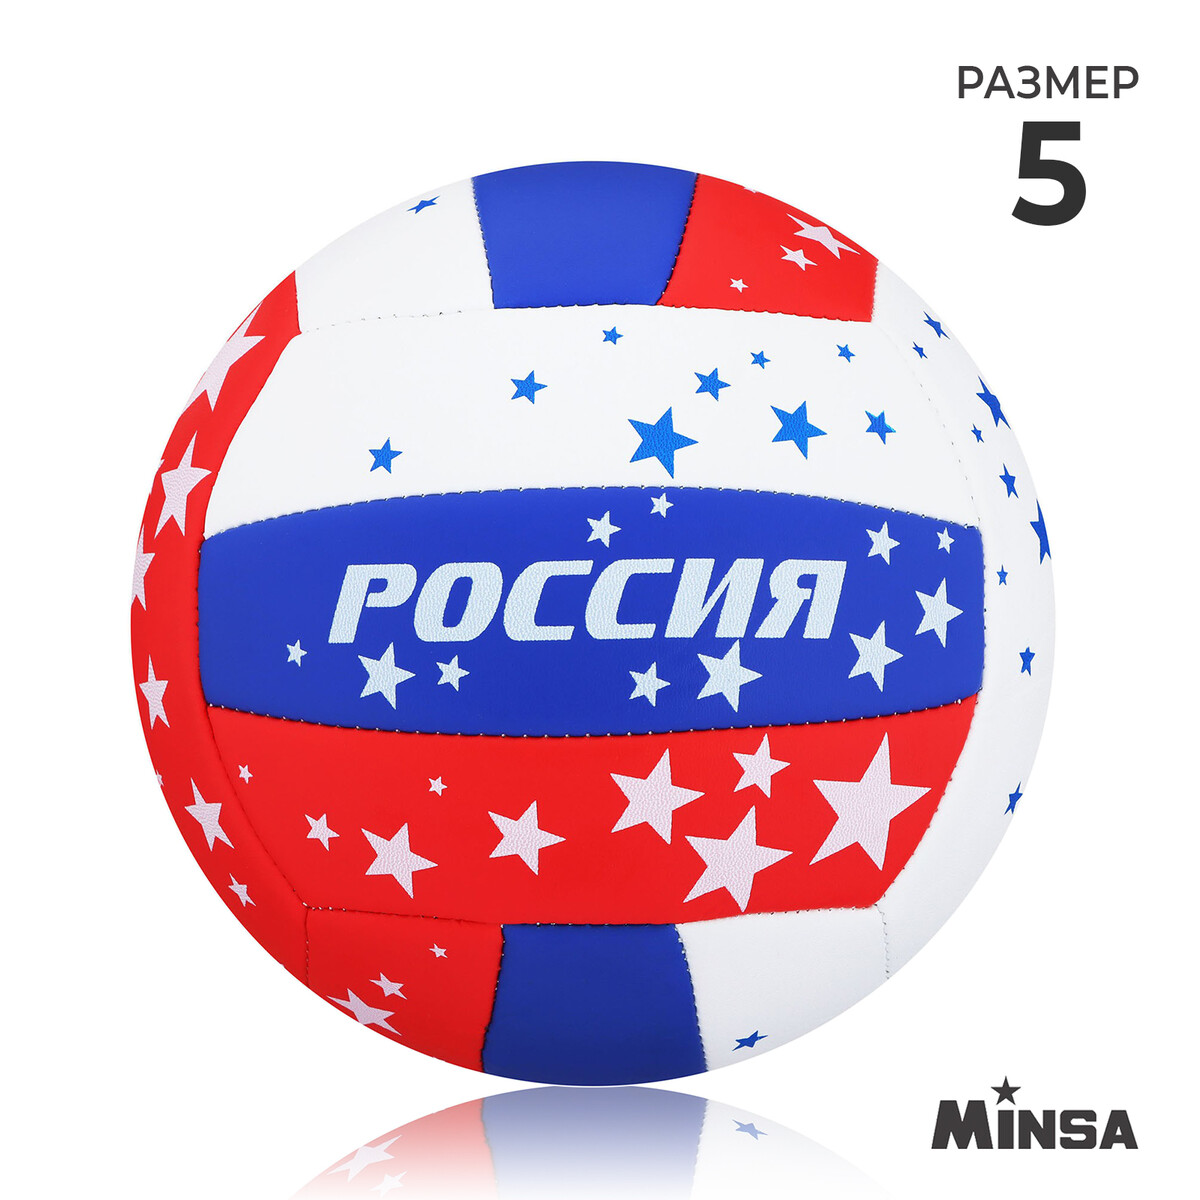 Мяч волейбольный minsa, пвх, машинная сшивка, 18 панелей, р. 5 MINSA